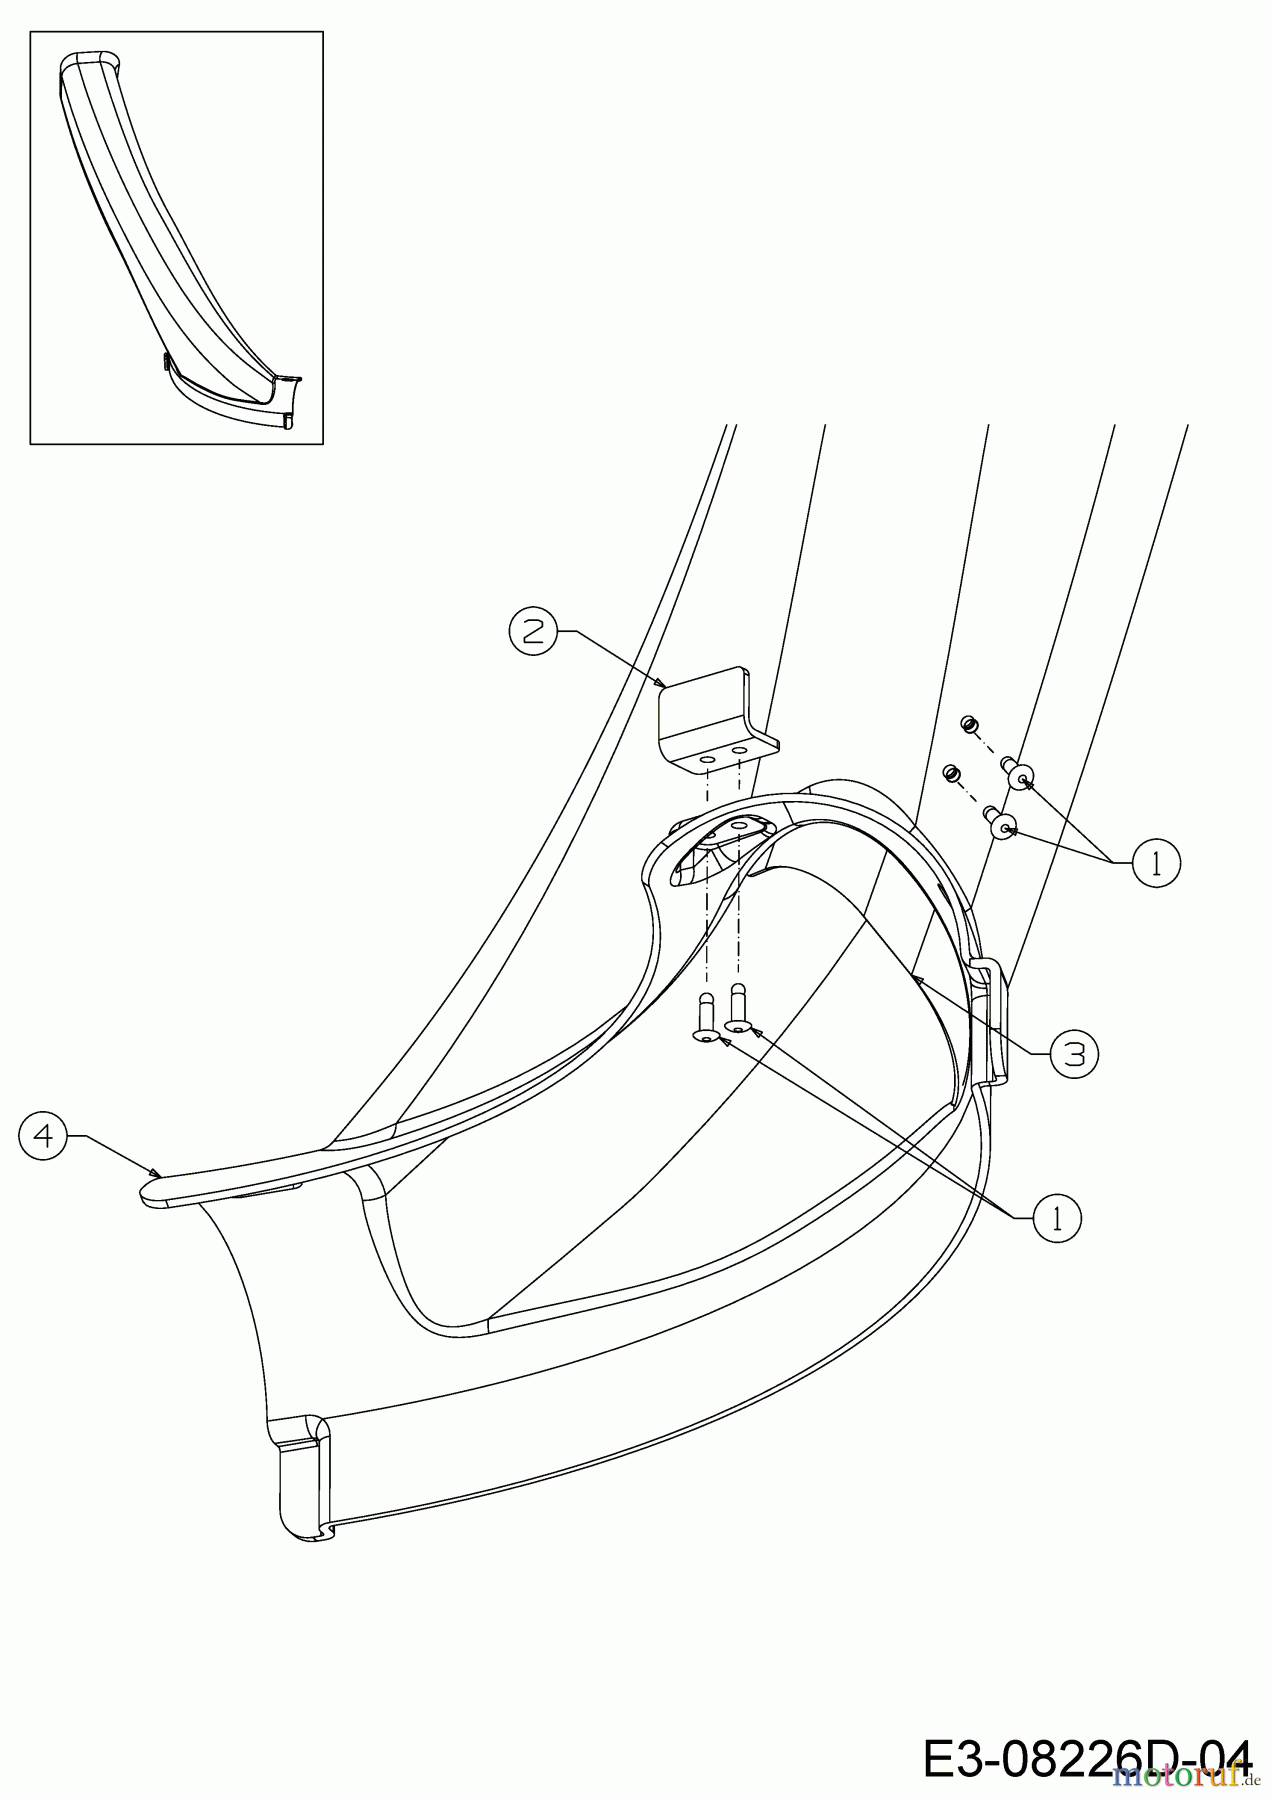  WOLF-Garten Expert Rasentraktoren Scooter Pro 13B226HD650  (2016) Auswurfschacht